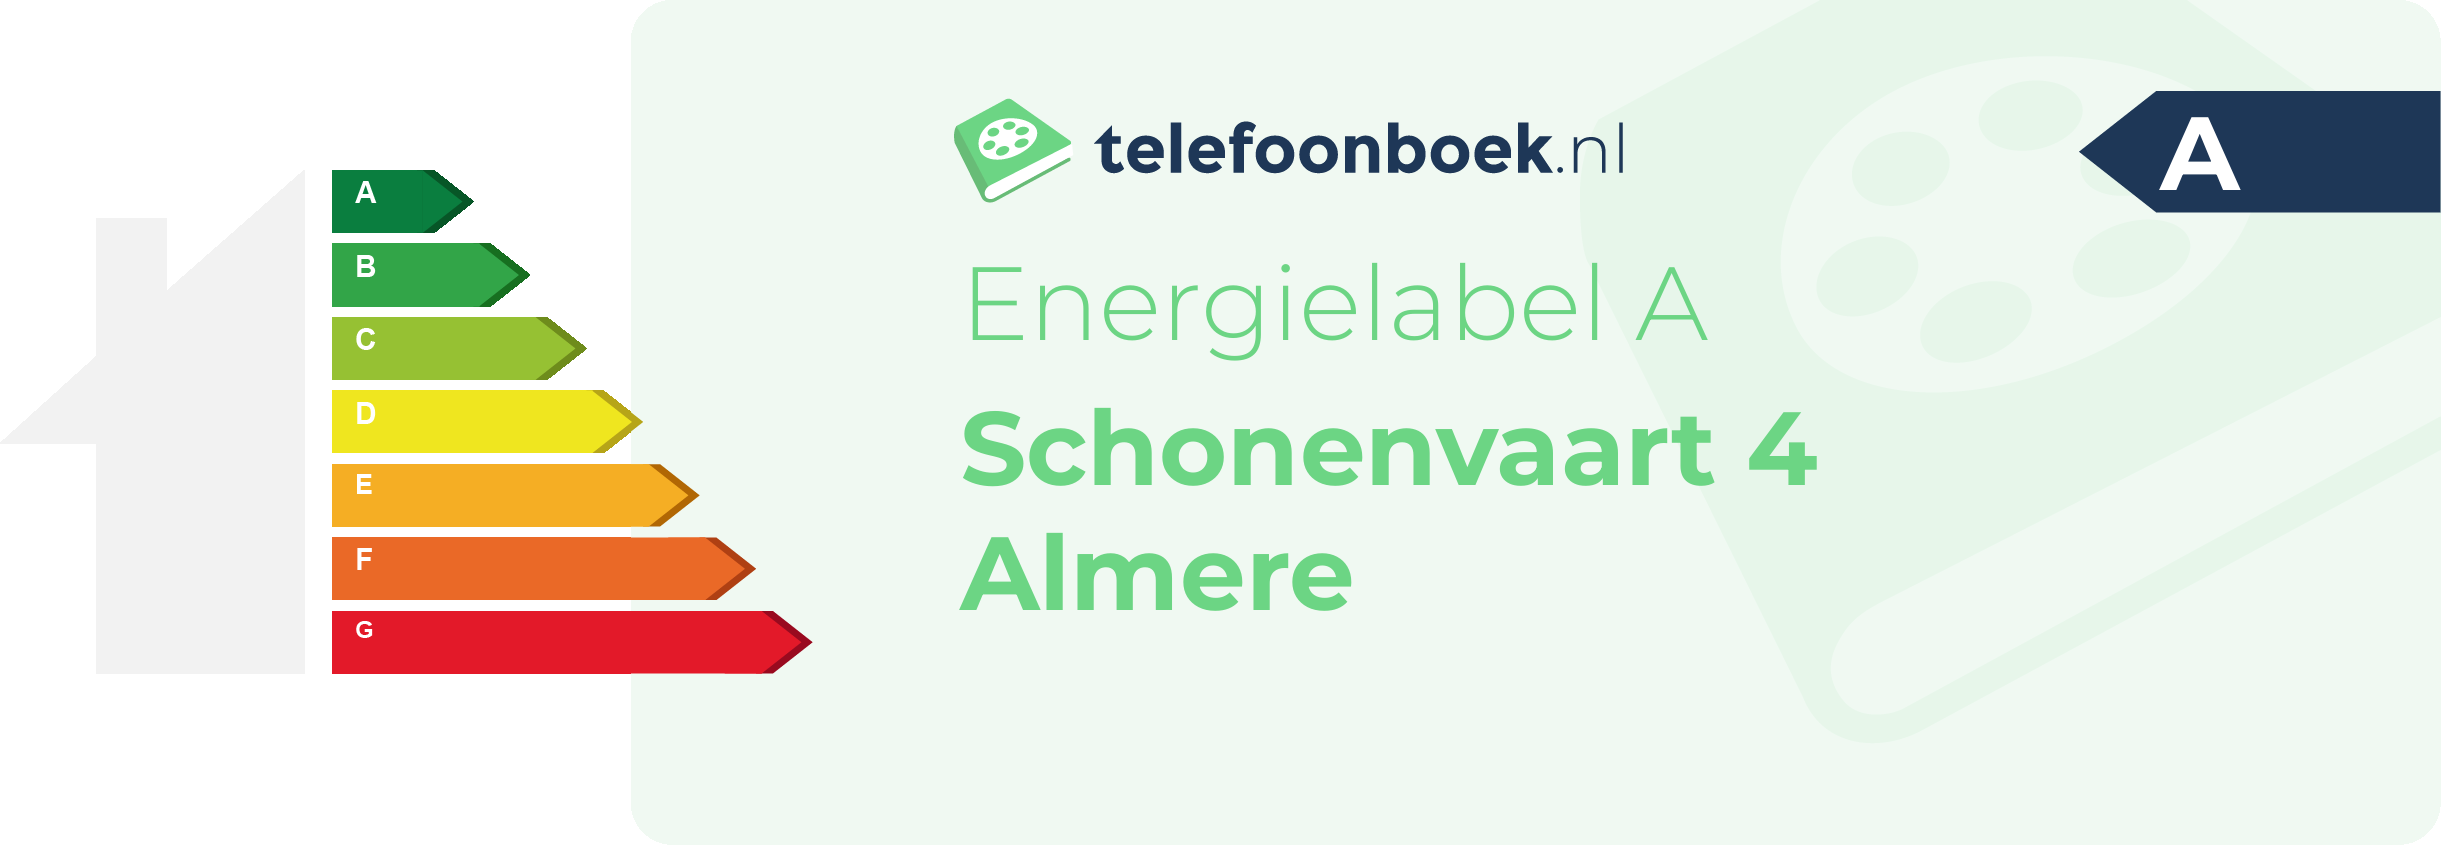 Energielabel Schonenvaart 4 Almere